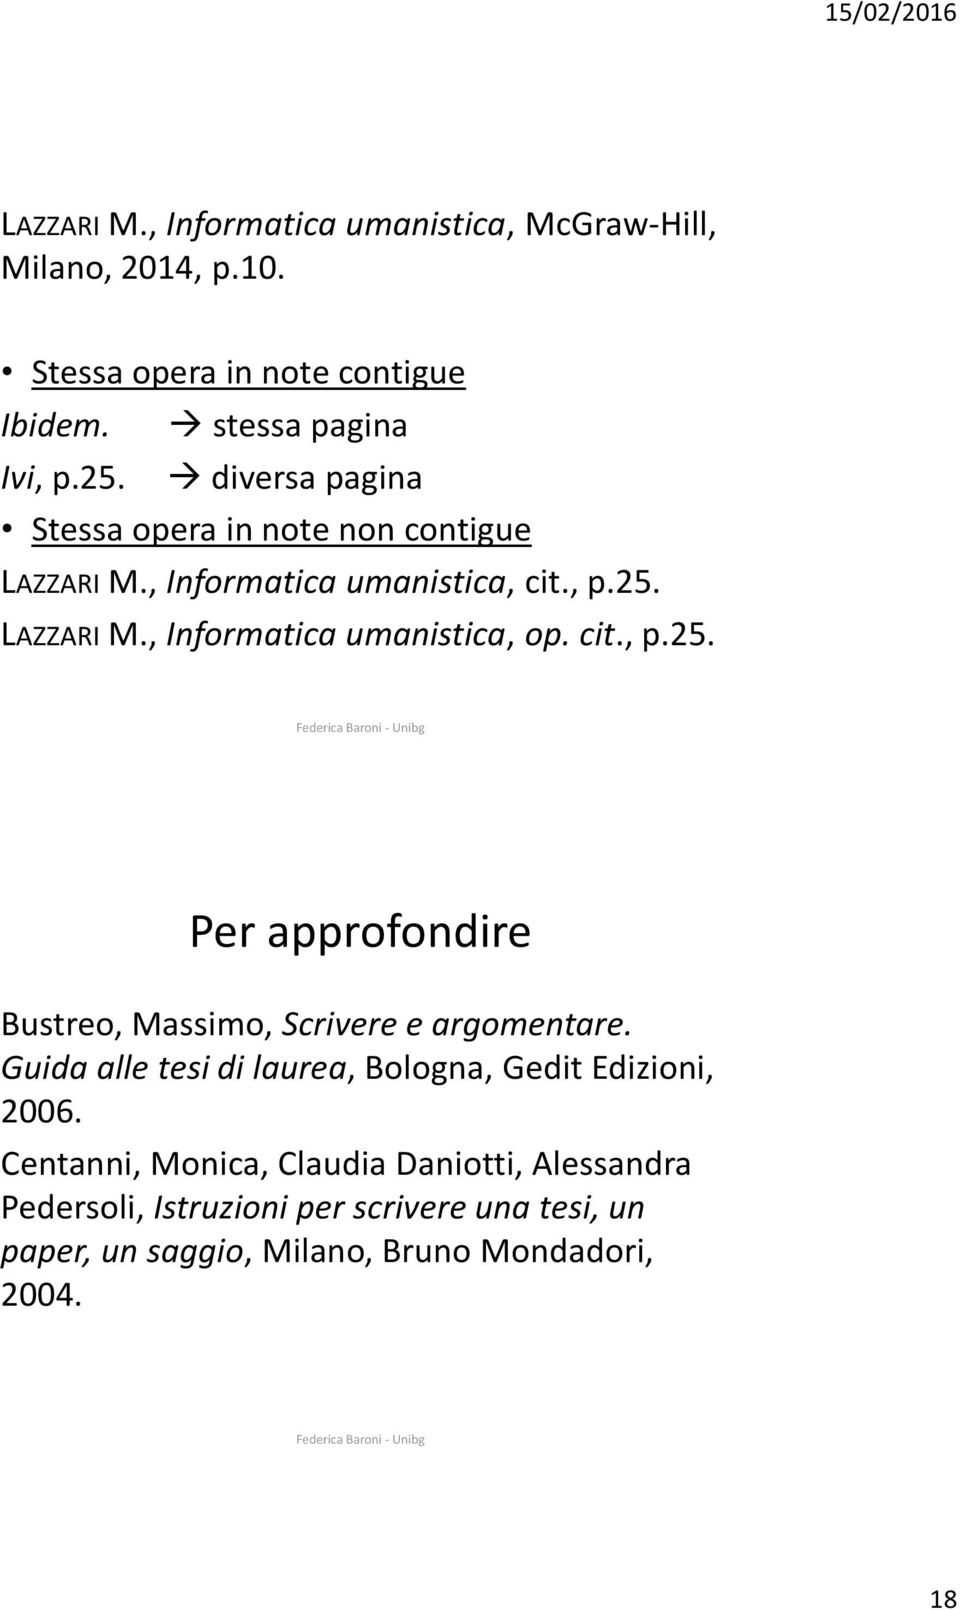 cit., p.25. Per approfondire Bustreo, Massimo, Scrivere e argomentare. Guida alle tesi di laurea, Bologna, Gedit Edizioni, 2006.